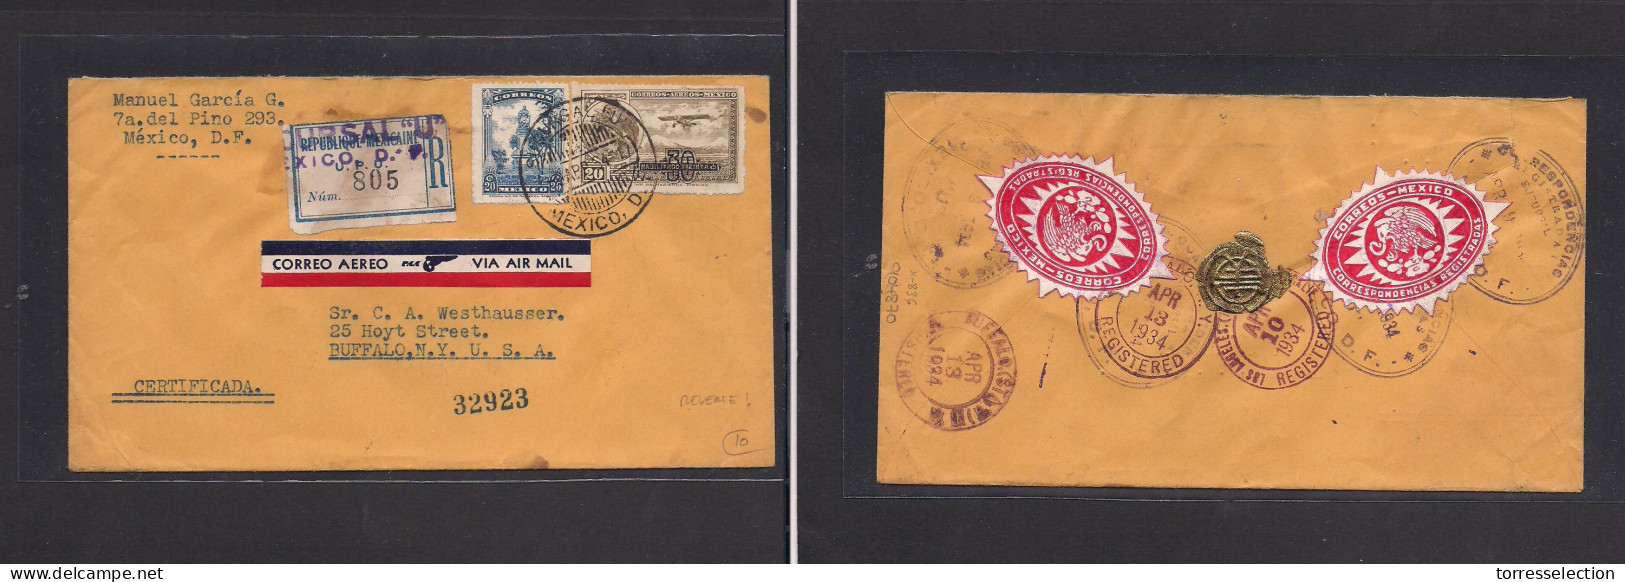 MEXICO. Mexico - Cover - 1964 DF To USA Buffalo NY Air Mult Fkd Env, Reverse Seals. Easy Deal. XSALE. - Mexiko